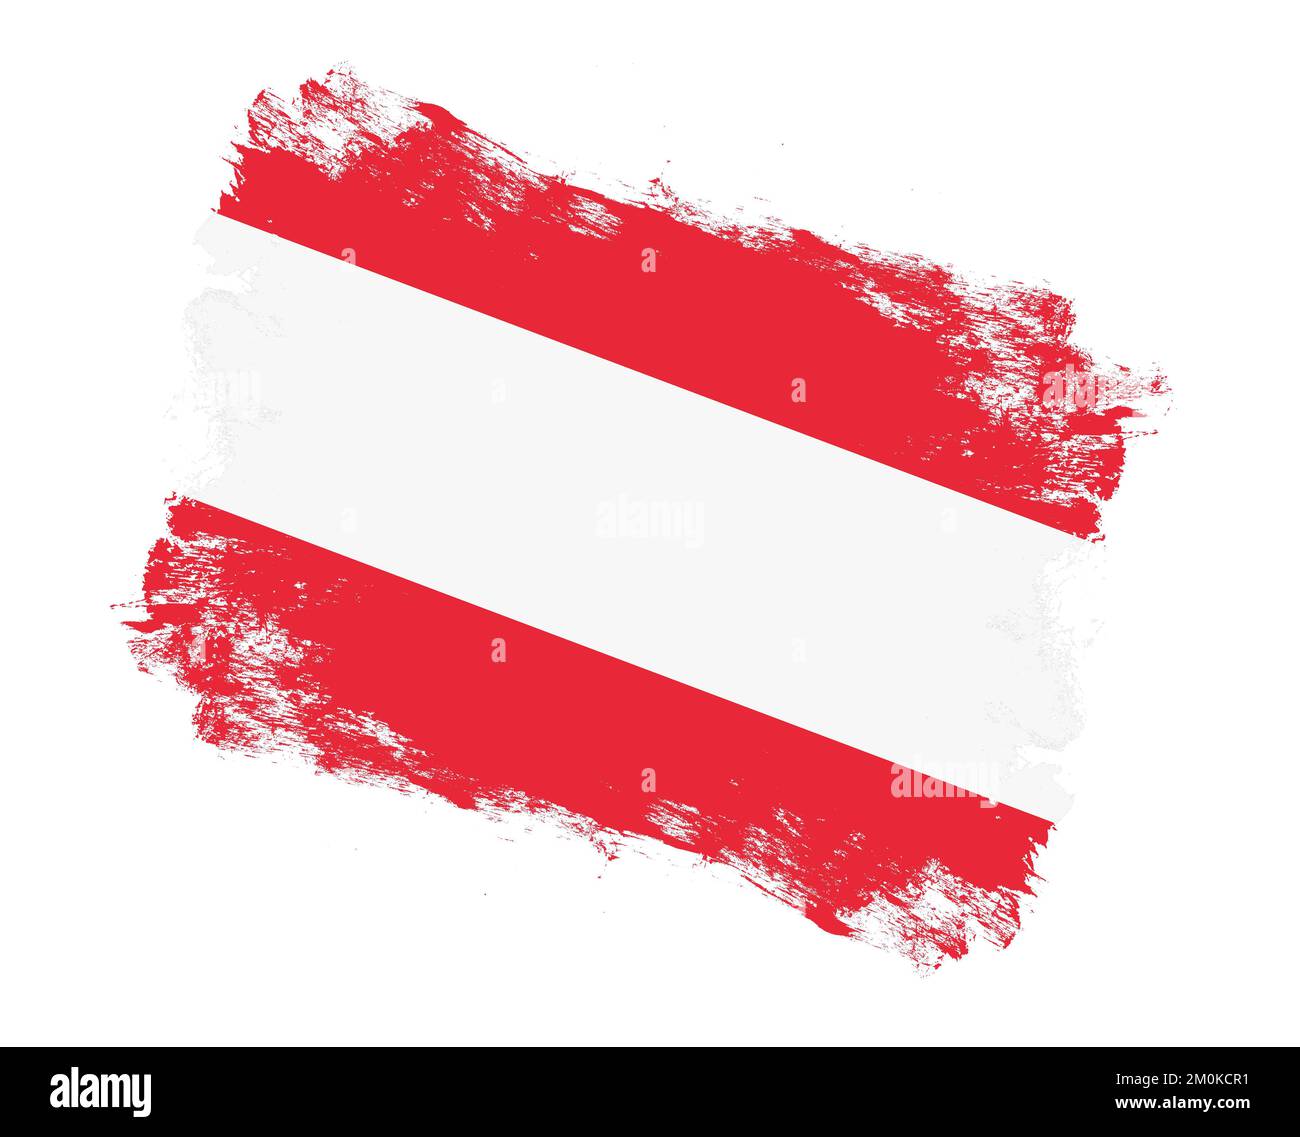 https://c8.alamy.com/compde/2m0kcr1/mit-streichpinsel-bemalte-osterreichische-flagge-auf-weissem-hintergrund-2m0kcr1.jpg